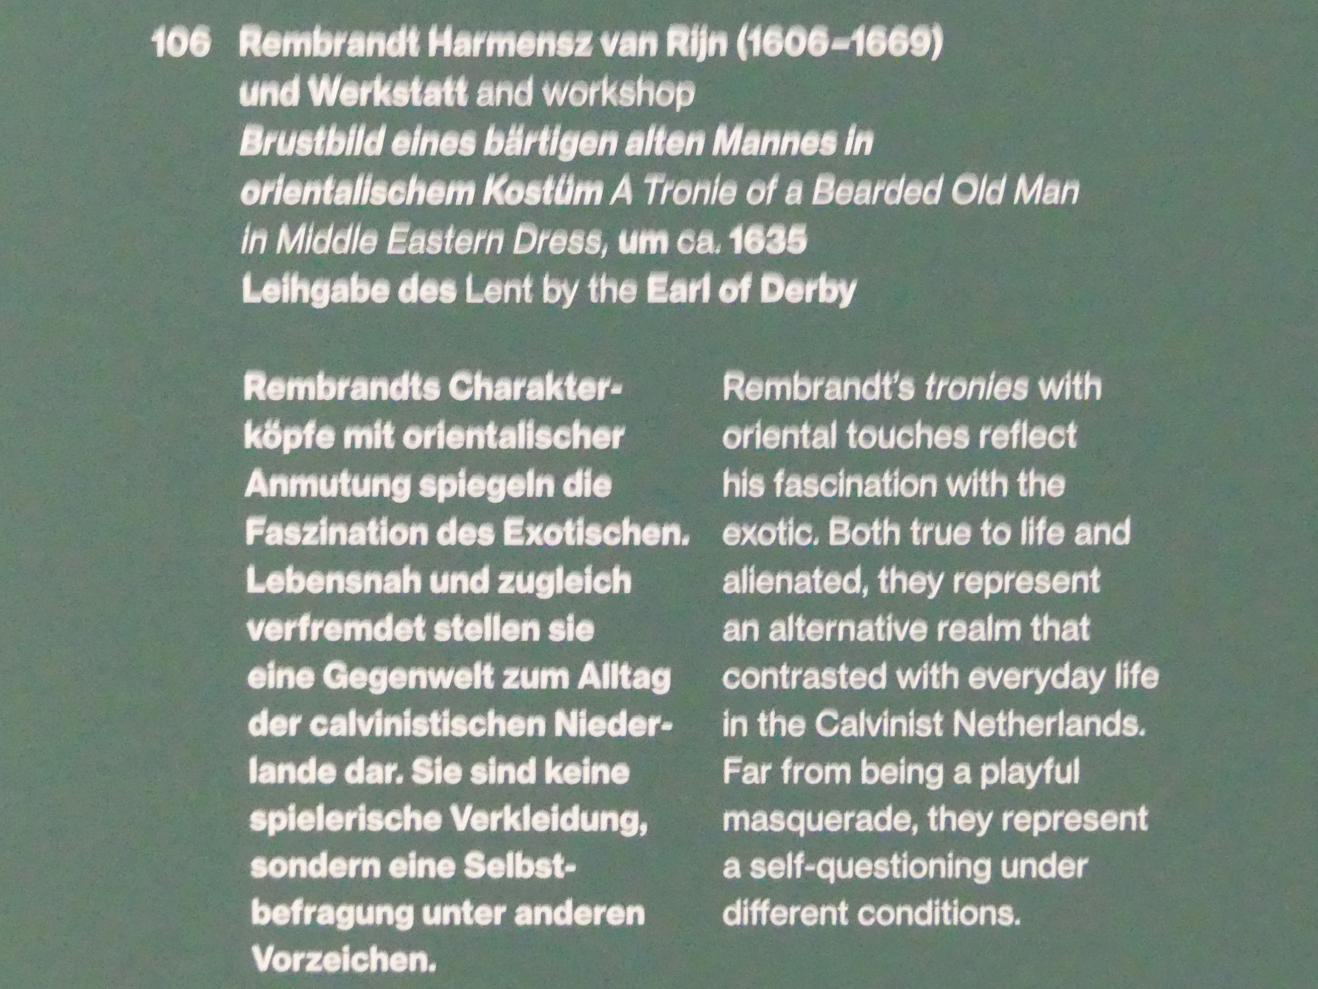 Rembrandt (Rembrandt Harmenszoon van Rijn) (1627–1669), Brustbild eines bärtigen alten Mannes in orientalischem Kostüm, Potsdam, Museum Barberini, Ausstellung "Rembrandts Orient" vom 13.03.-27.06.2021, Saal B5, um 1635, Bild 2/2